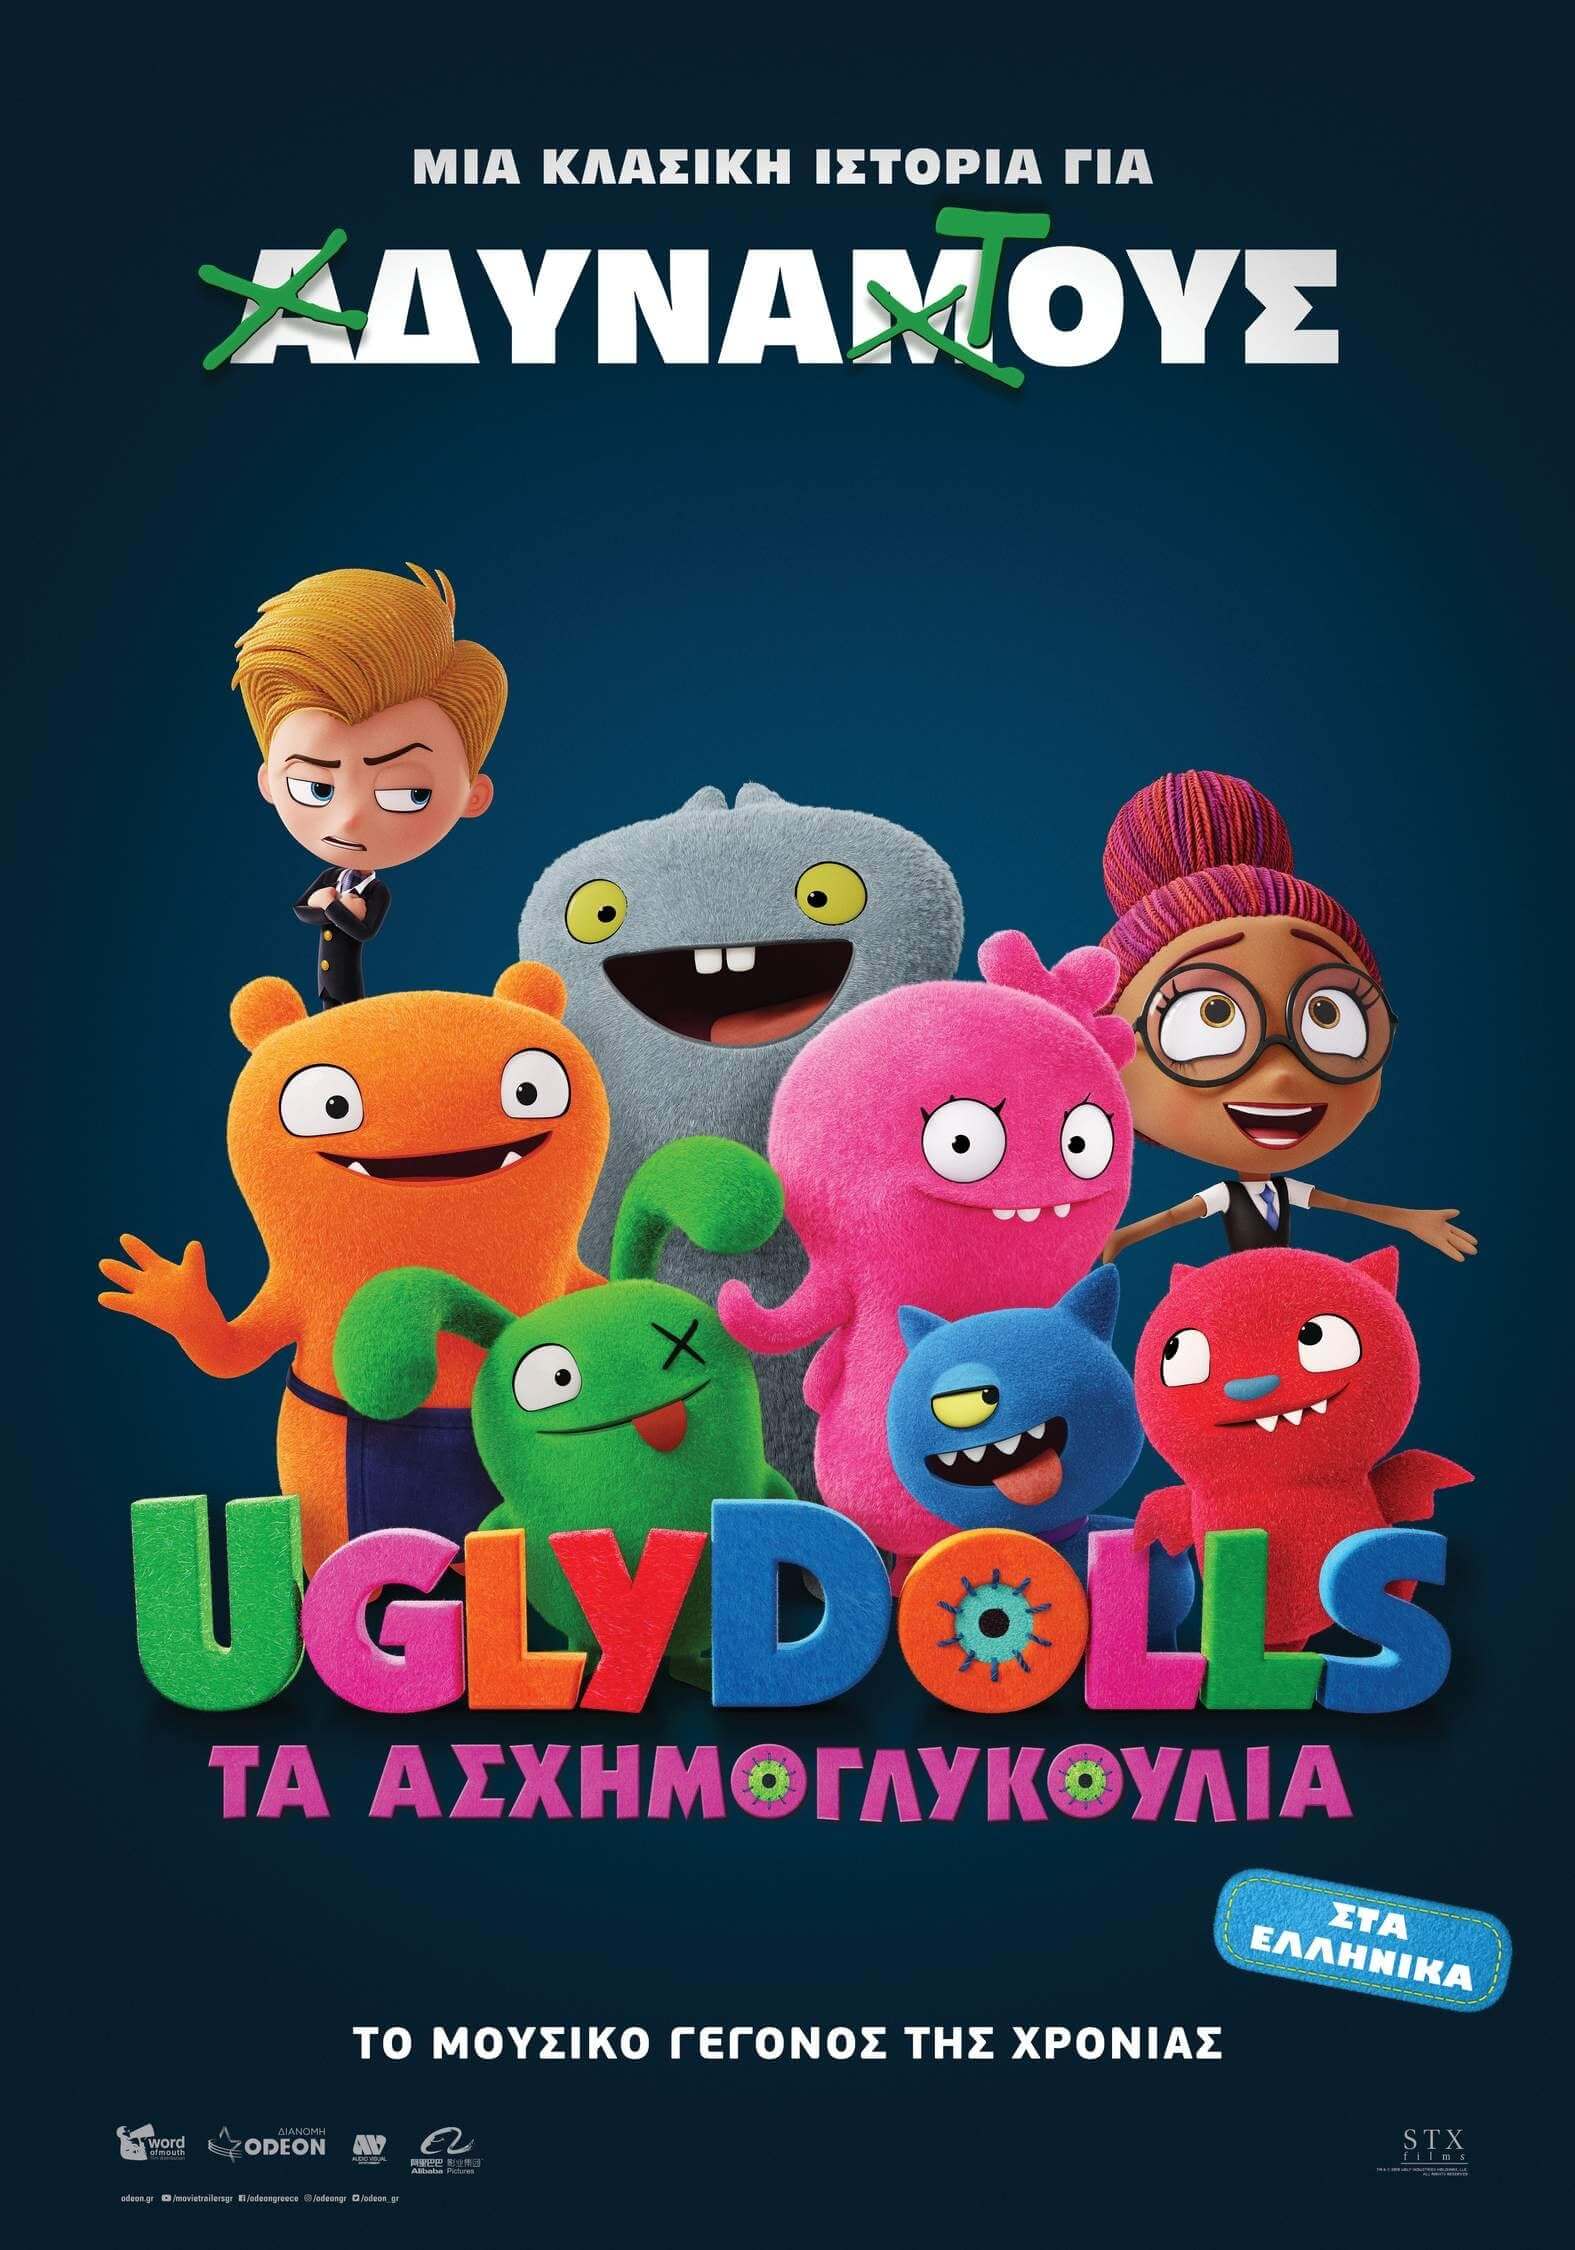 UglyDolls ผจญแดนตุ๊กตามหัศจรรย์